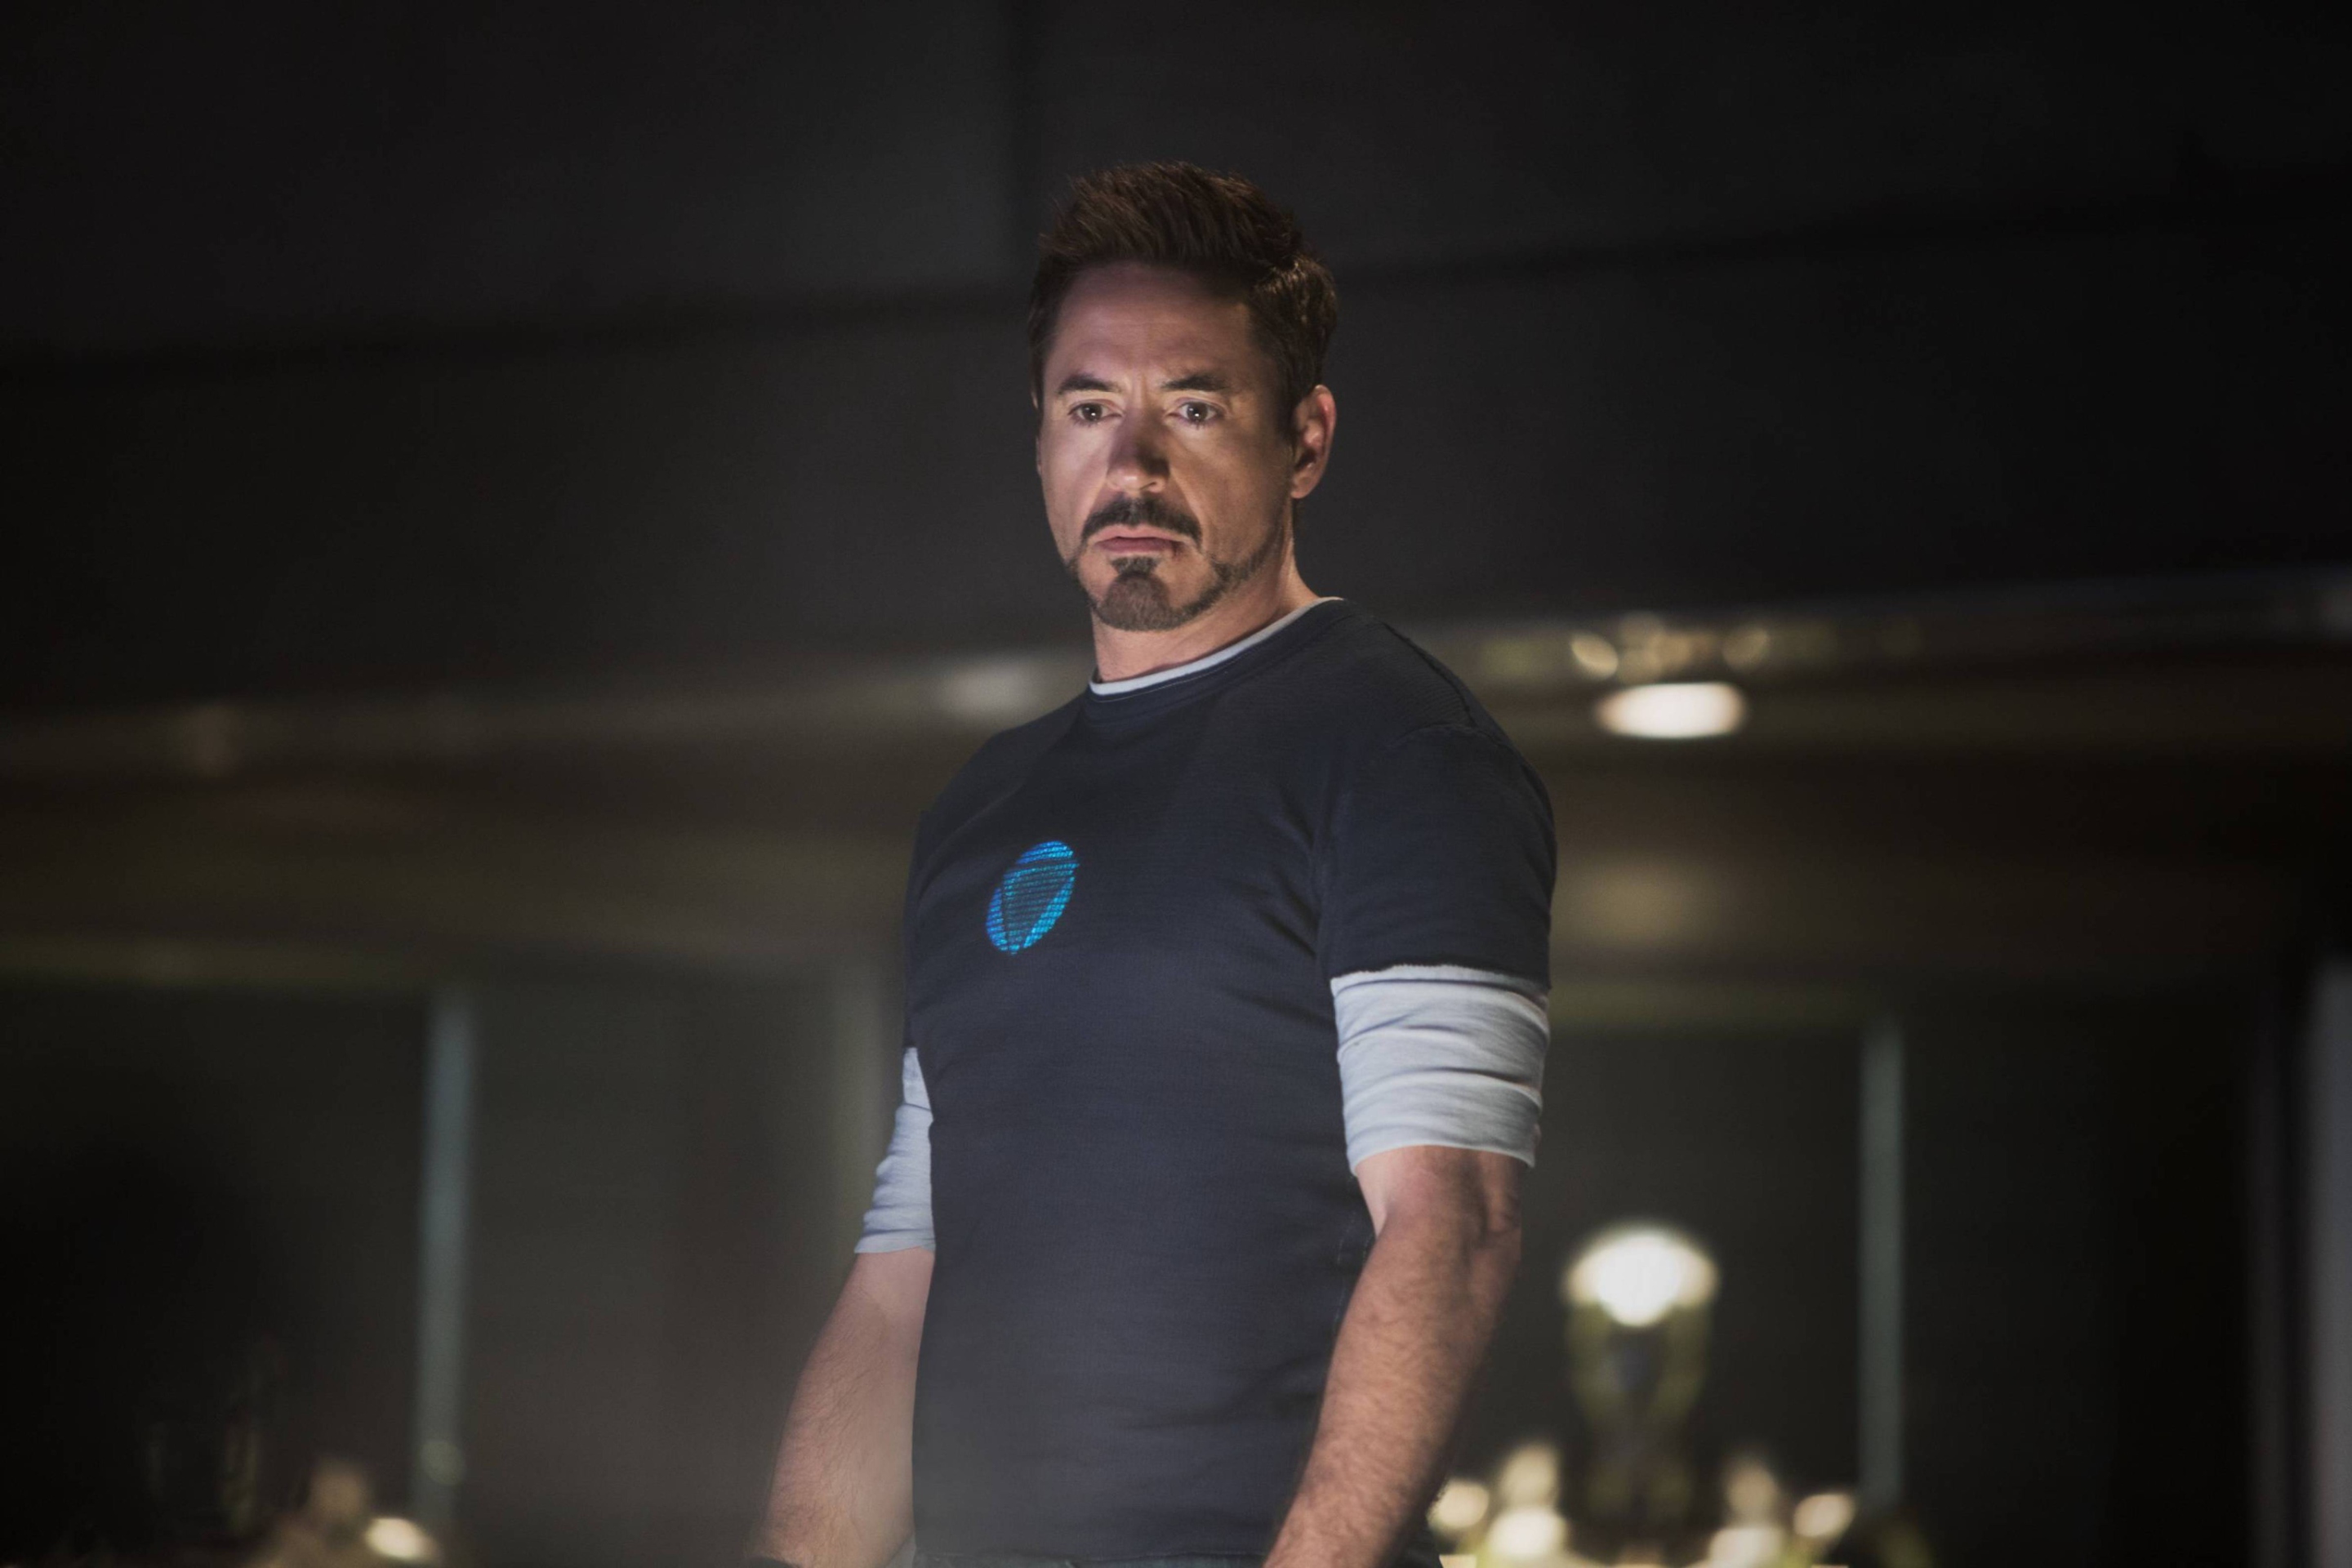 Robert Downey Jr As Iron Man 3 wallpaper 2880x1920